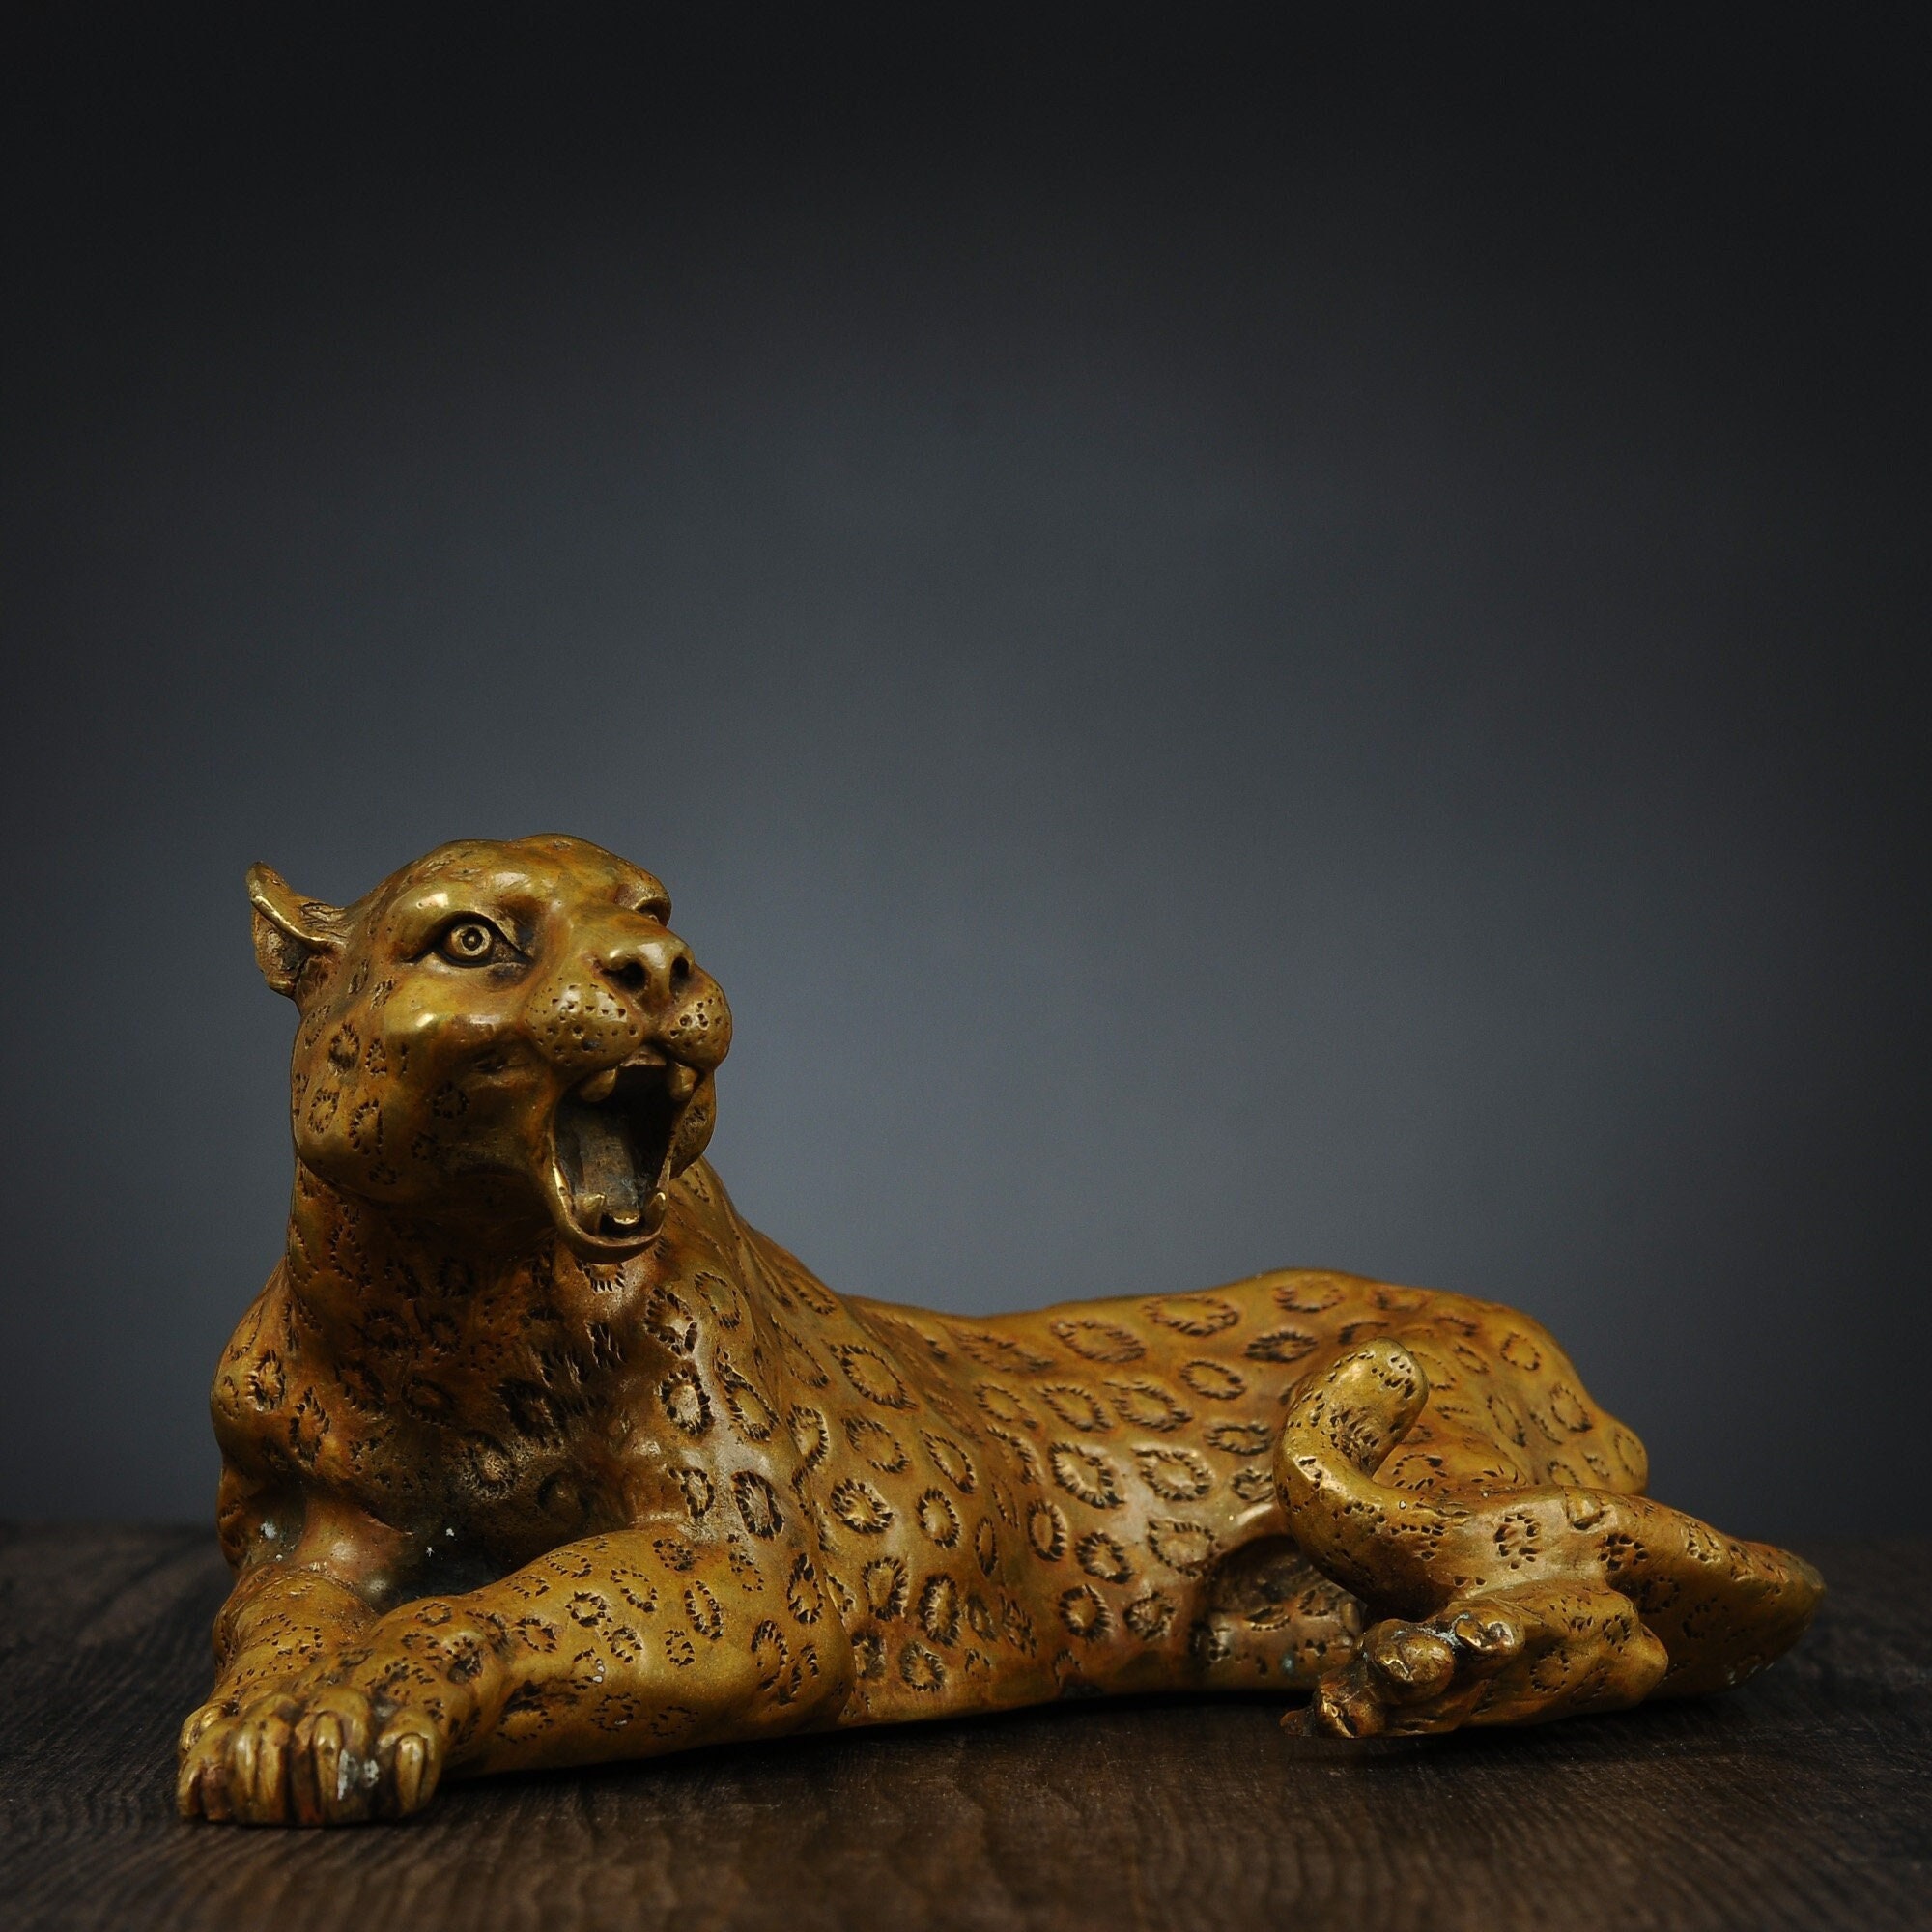 Cheetah Statue China Maker - Modern Sculpture Artist